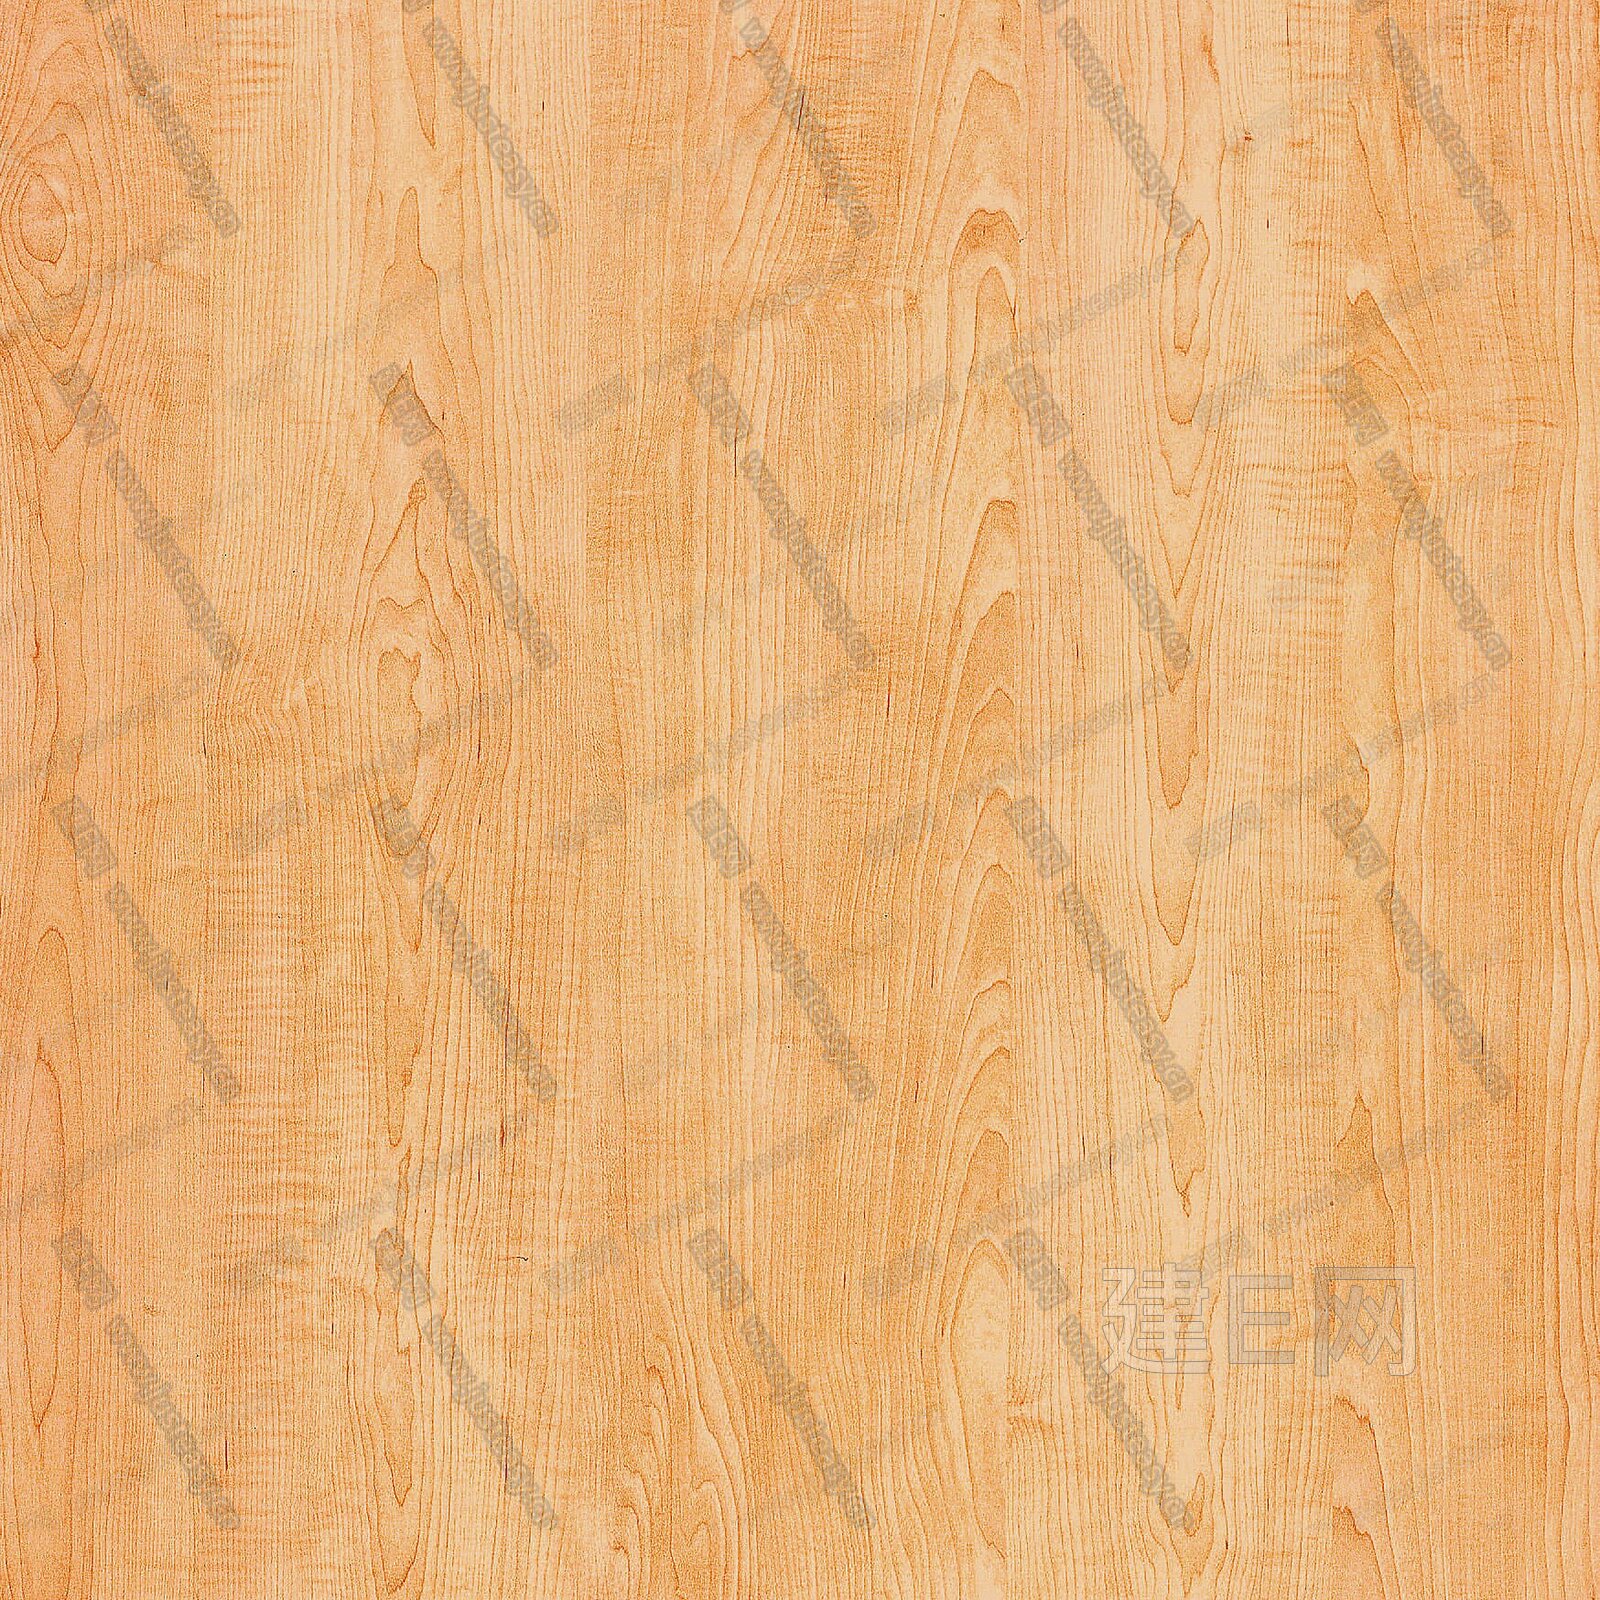 原木色木纹木饰面贴图3d贴图